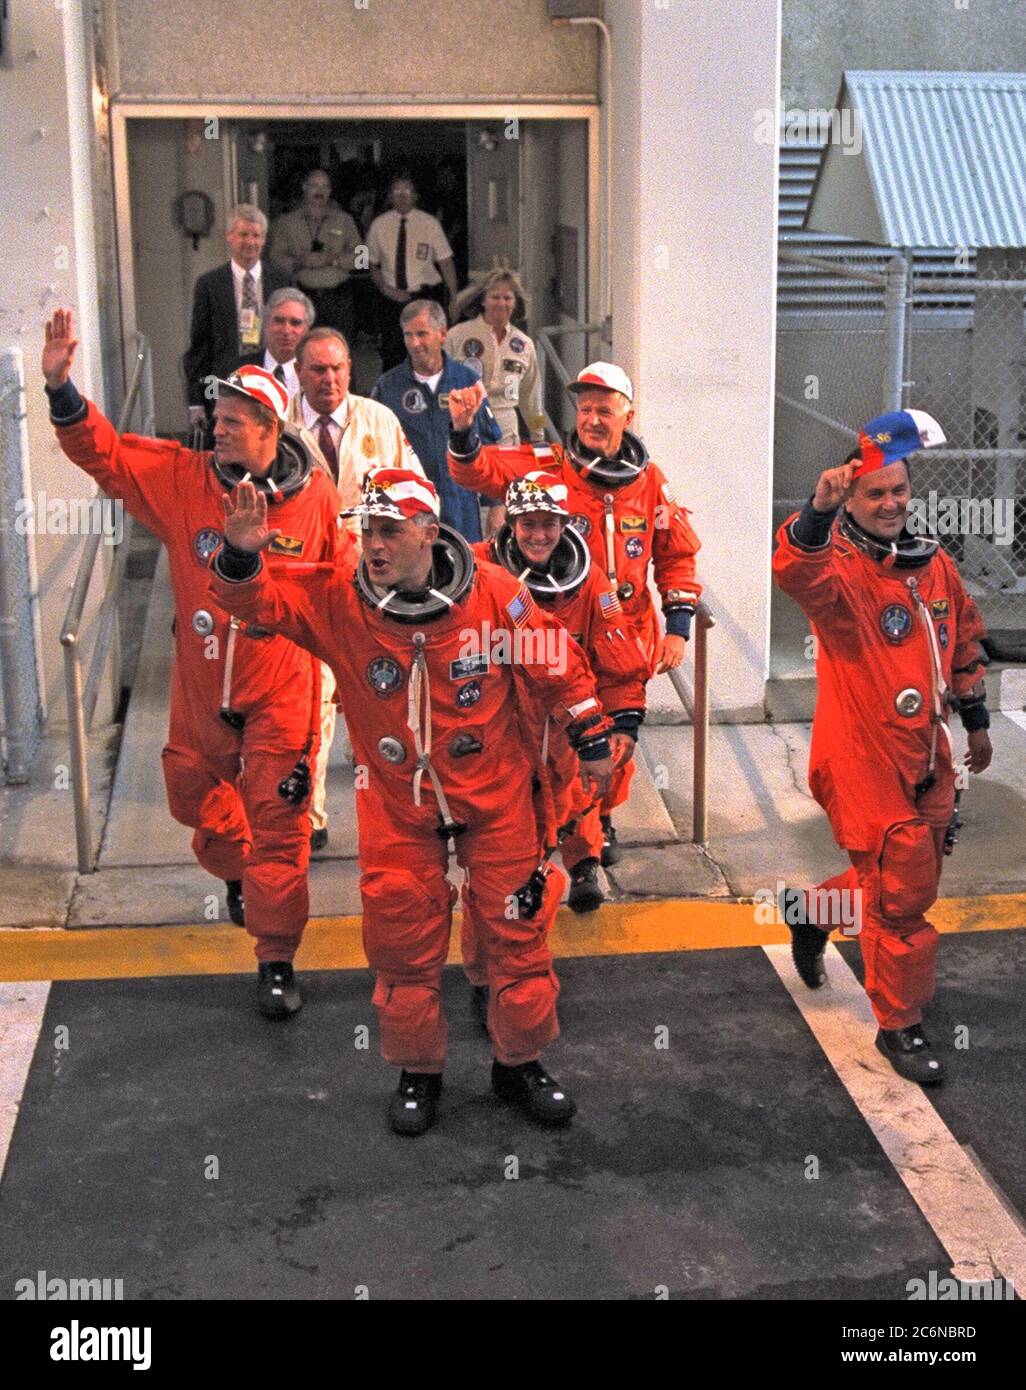 Die fünf STS-86 Missionsspezialisten winken der Menge von Pressevertretern, KSC-Mitarbeitern und anderen Wohlbegehern zu, wenn sie vom Operations and Checkout Building abreisen. Die drei US-Missionsspezialisten (und ihre Spitznamen für diesen Flug) sind von links, "zu groß" Scott E. Parazynski, "genau richtig" David A. Wolf und "zu kurz" Wendy B. Lawrence. Die beiden Missionsspezialisten, die ausländische Raumfahrtagenturen vertreten, sind Wladimir Georgiewitsch Titov von der russischen Raumfahrtagentur, im Vordergrund rechts, und Jean-Loup J.M. Chretien der französischen Raumfahrtagentur CNES im Hintergrund rechts. Kommando Stockfoto